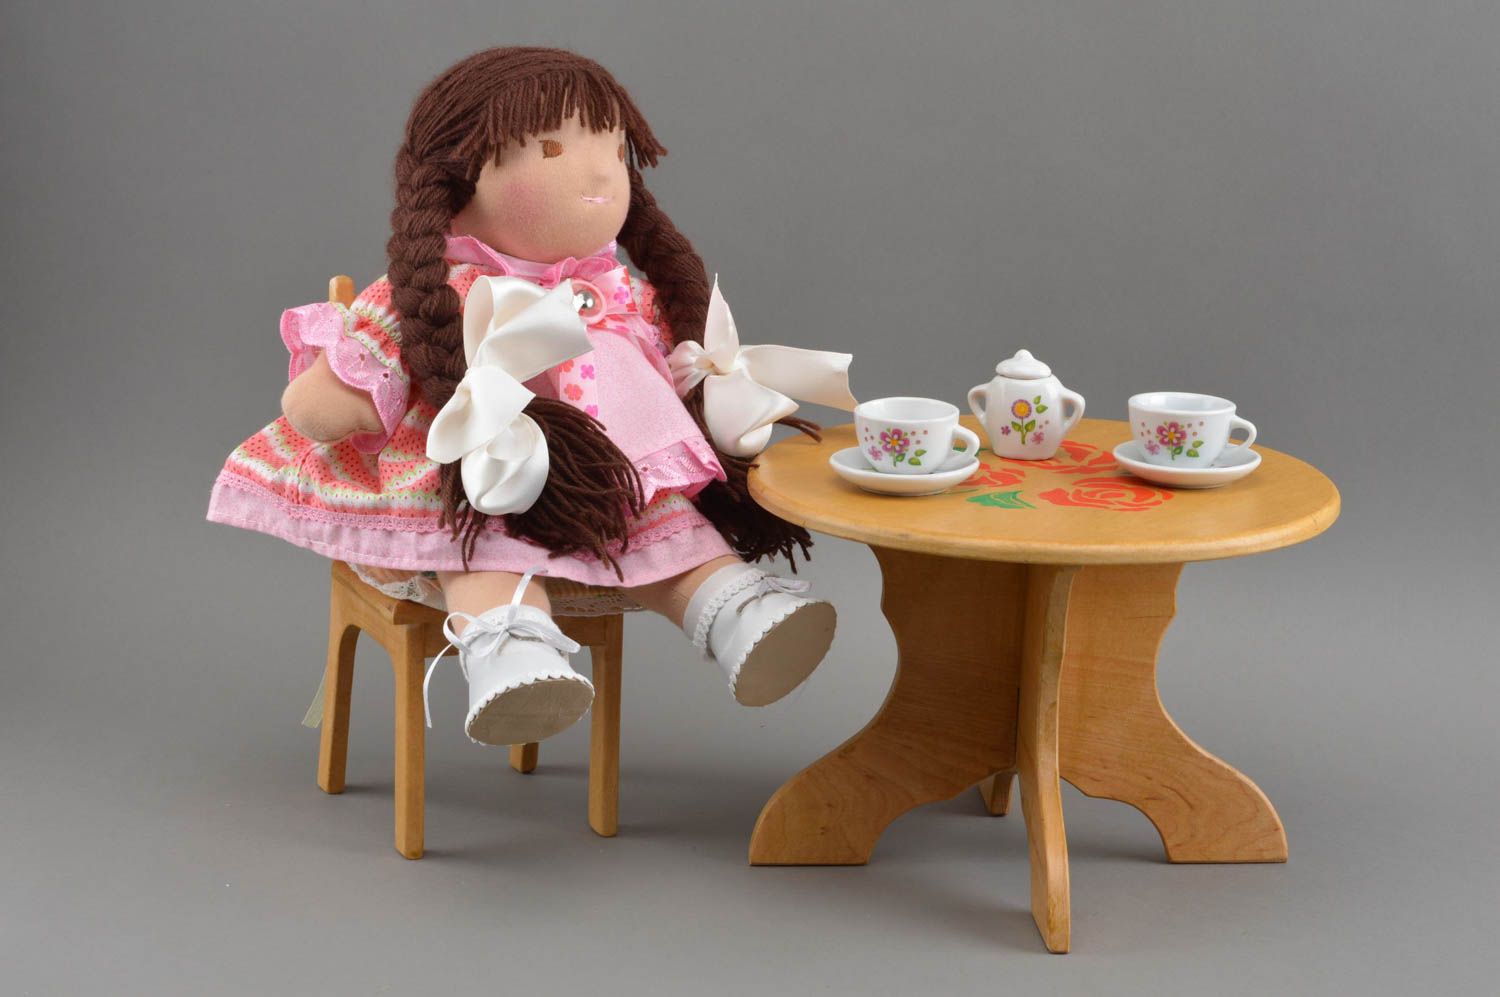 Авторская кукла ручной работы красивая из ткани для детей и декора дома фото 1